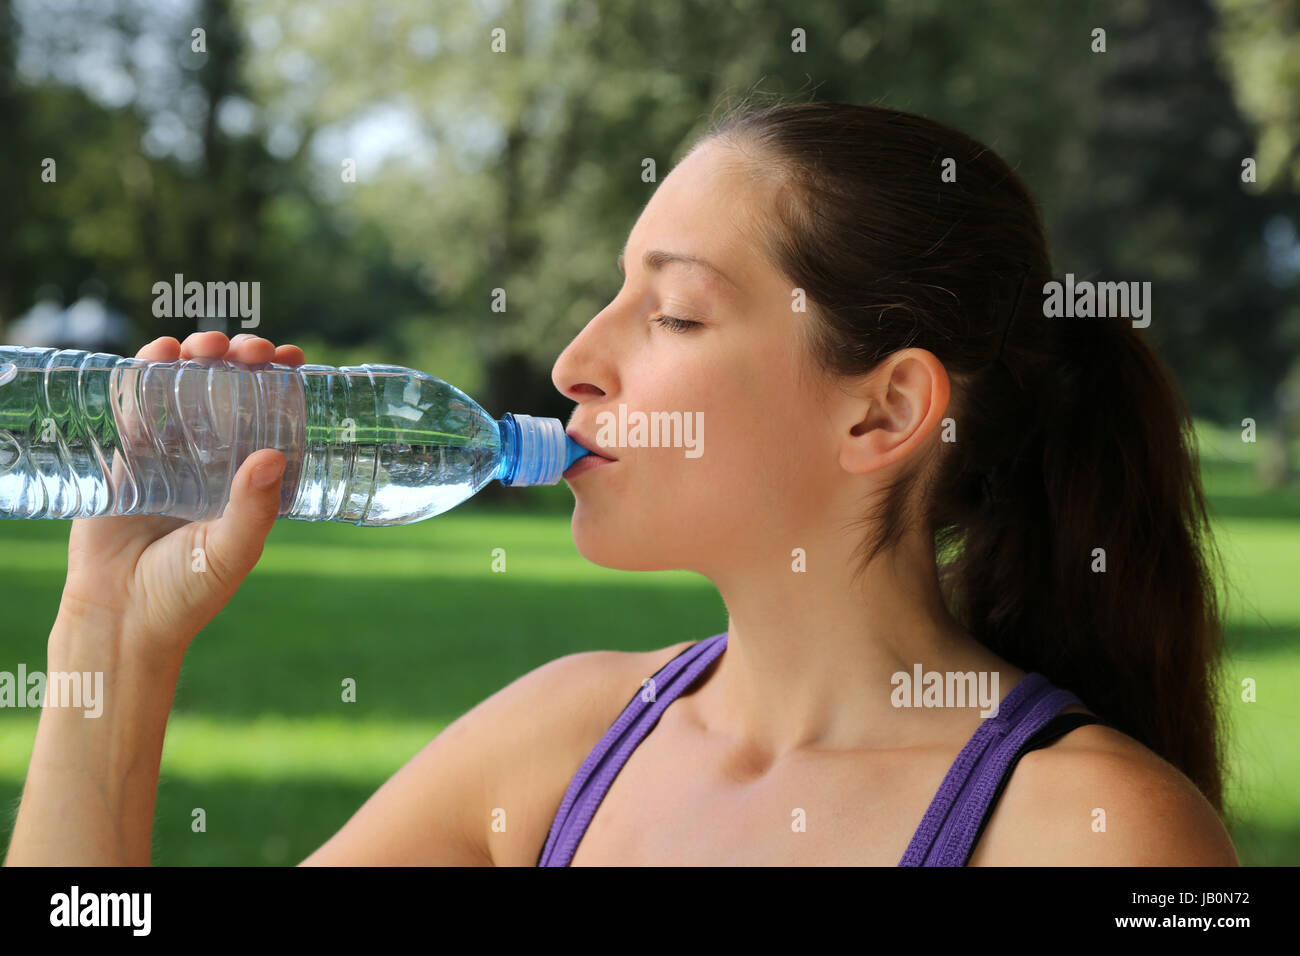 Eine sportliche Frau trinkt Wasser aus einer Flasche beim Sport oder Joggen Stock Photo